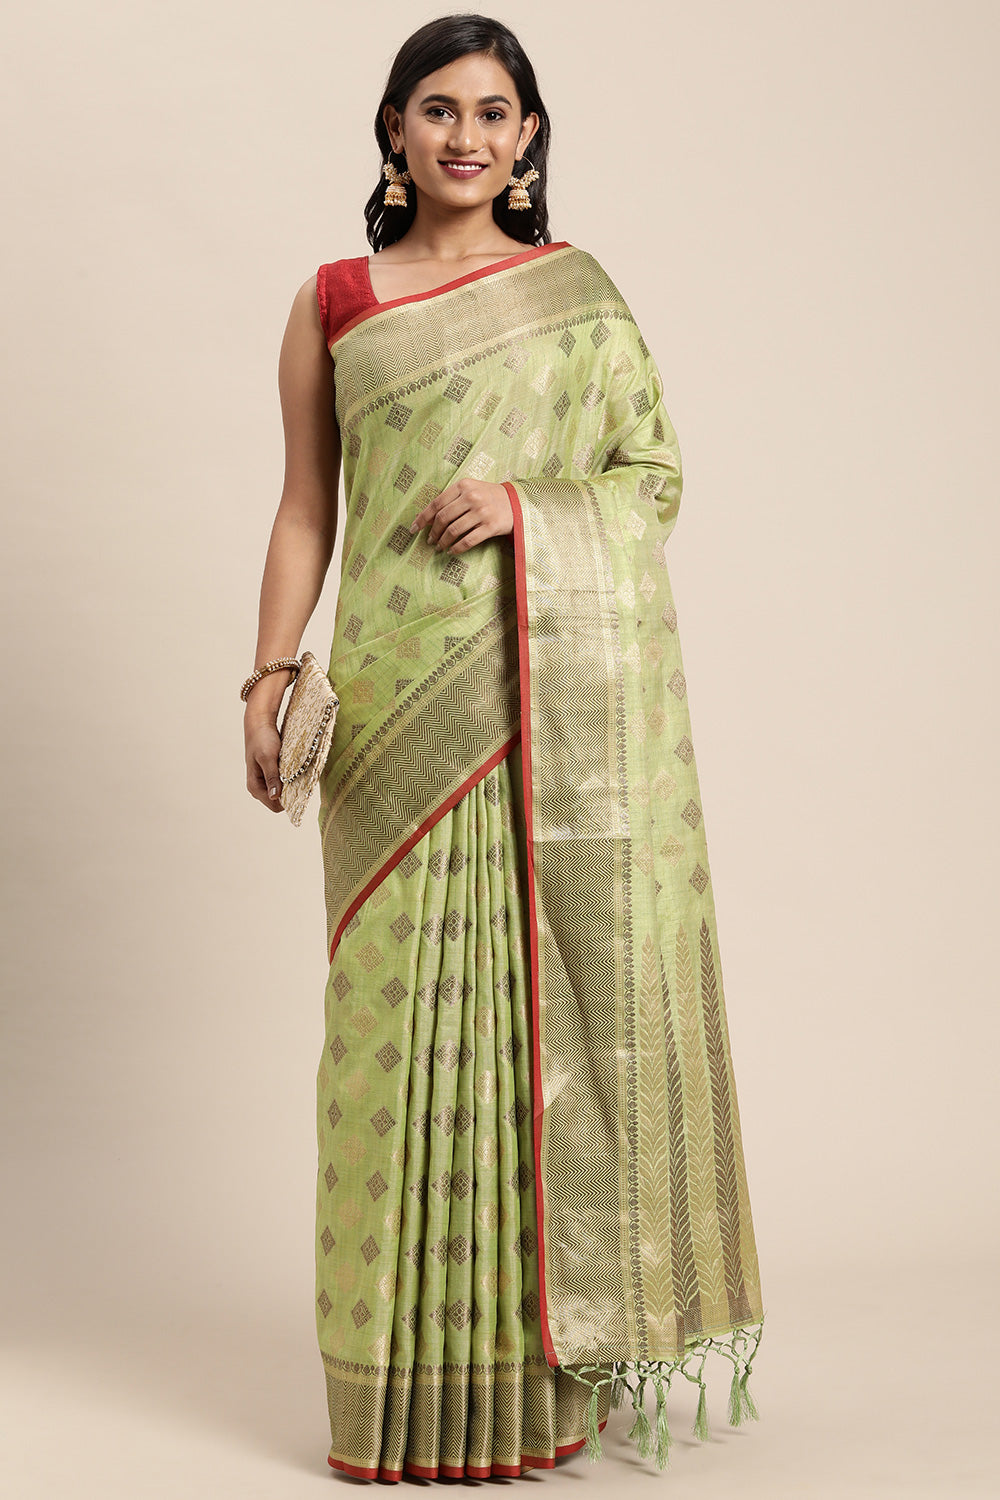 Pista Green Chanderi Cotton Saree With Weaving Work